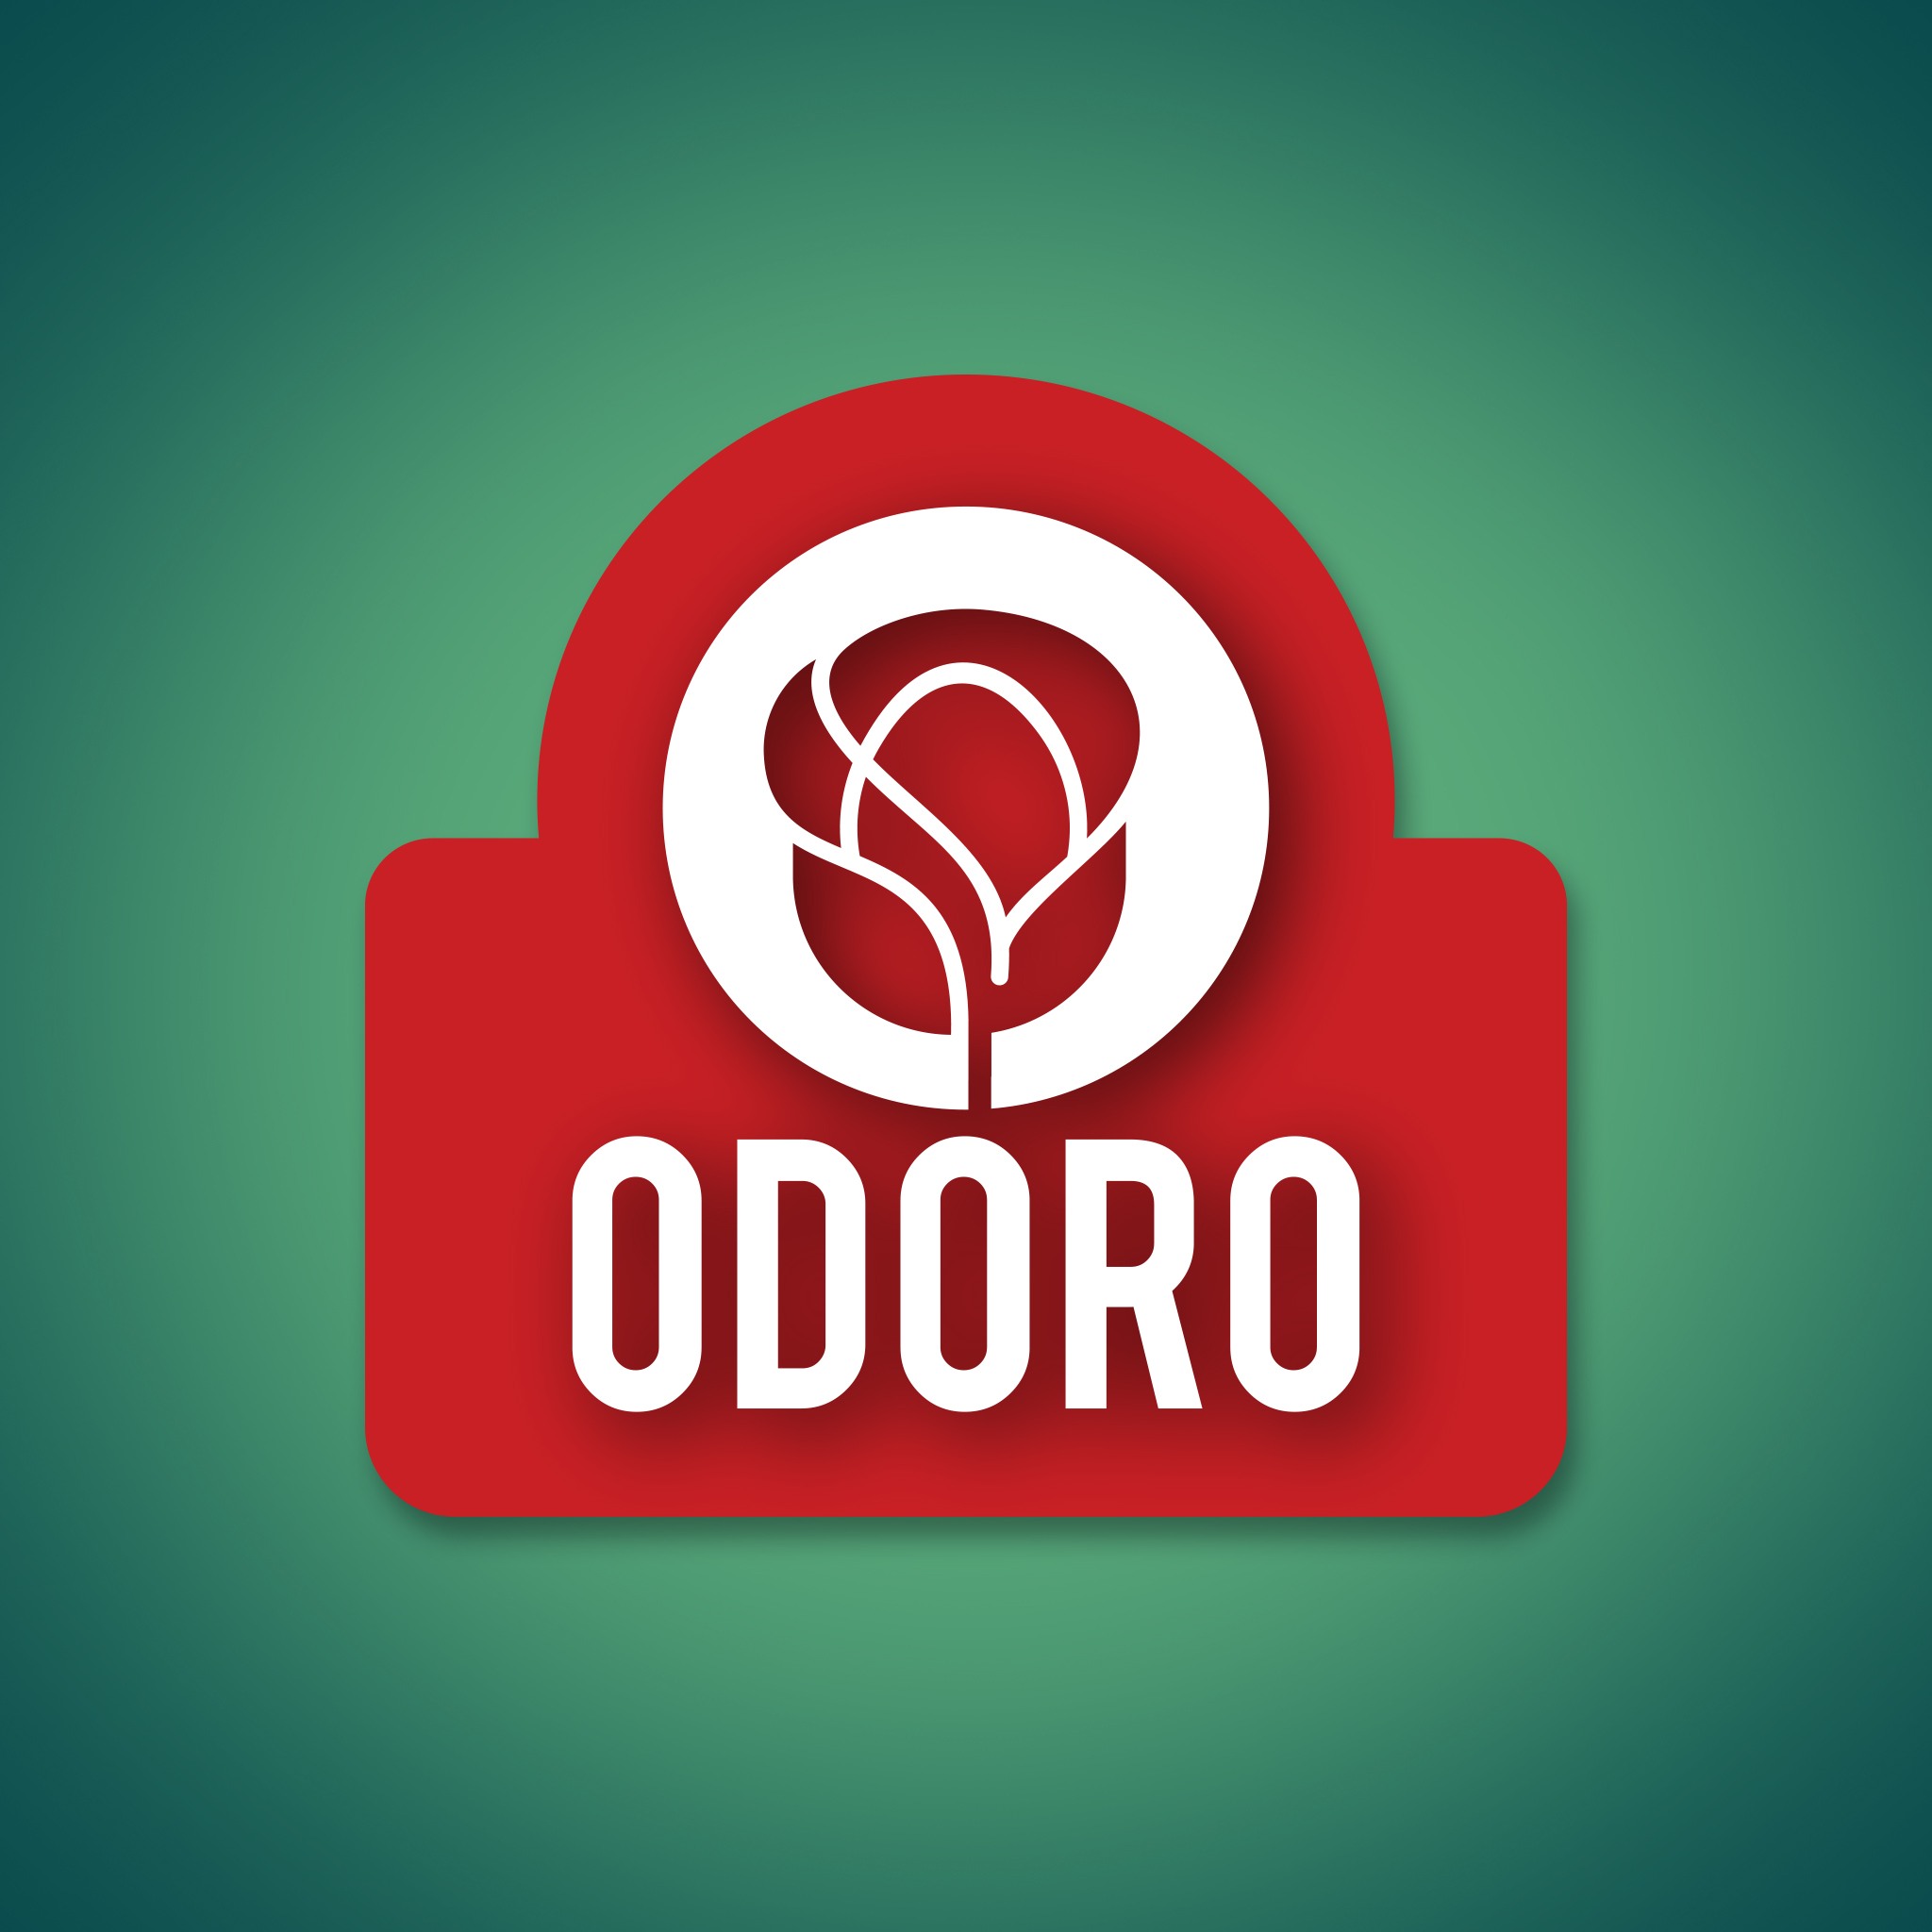 اودورو – ODORO